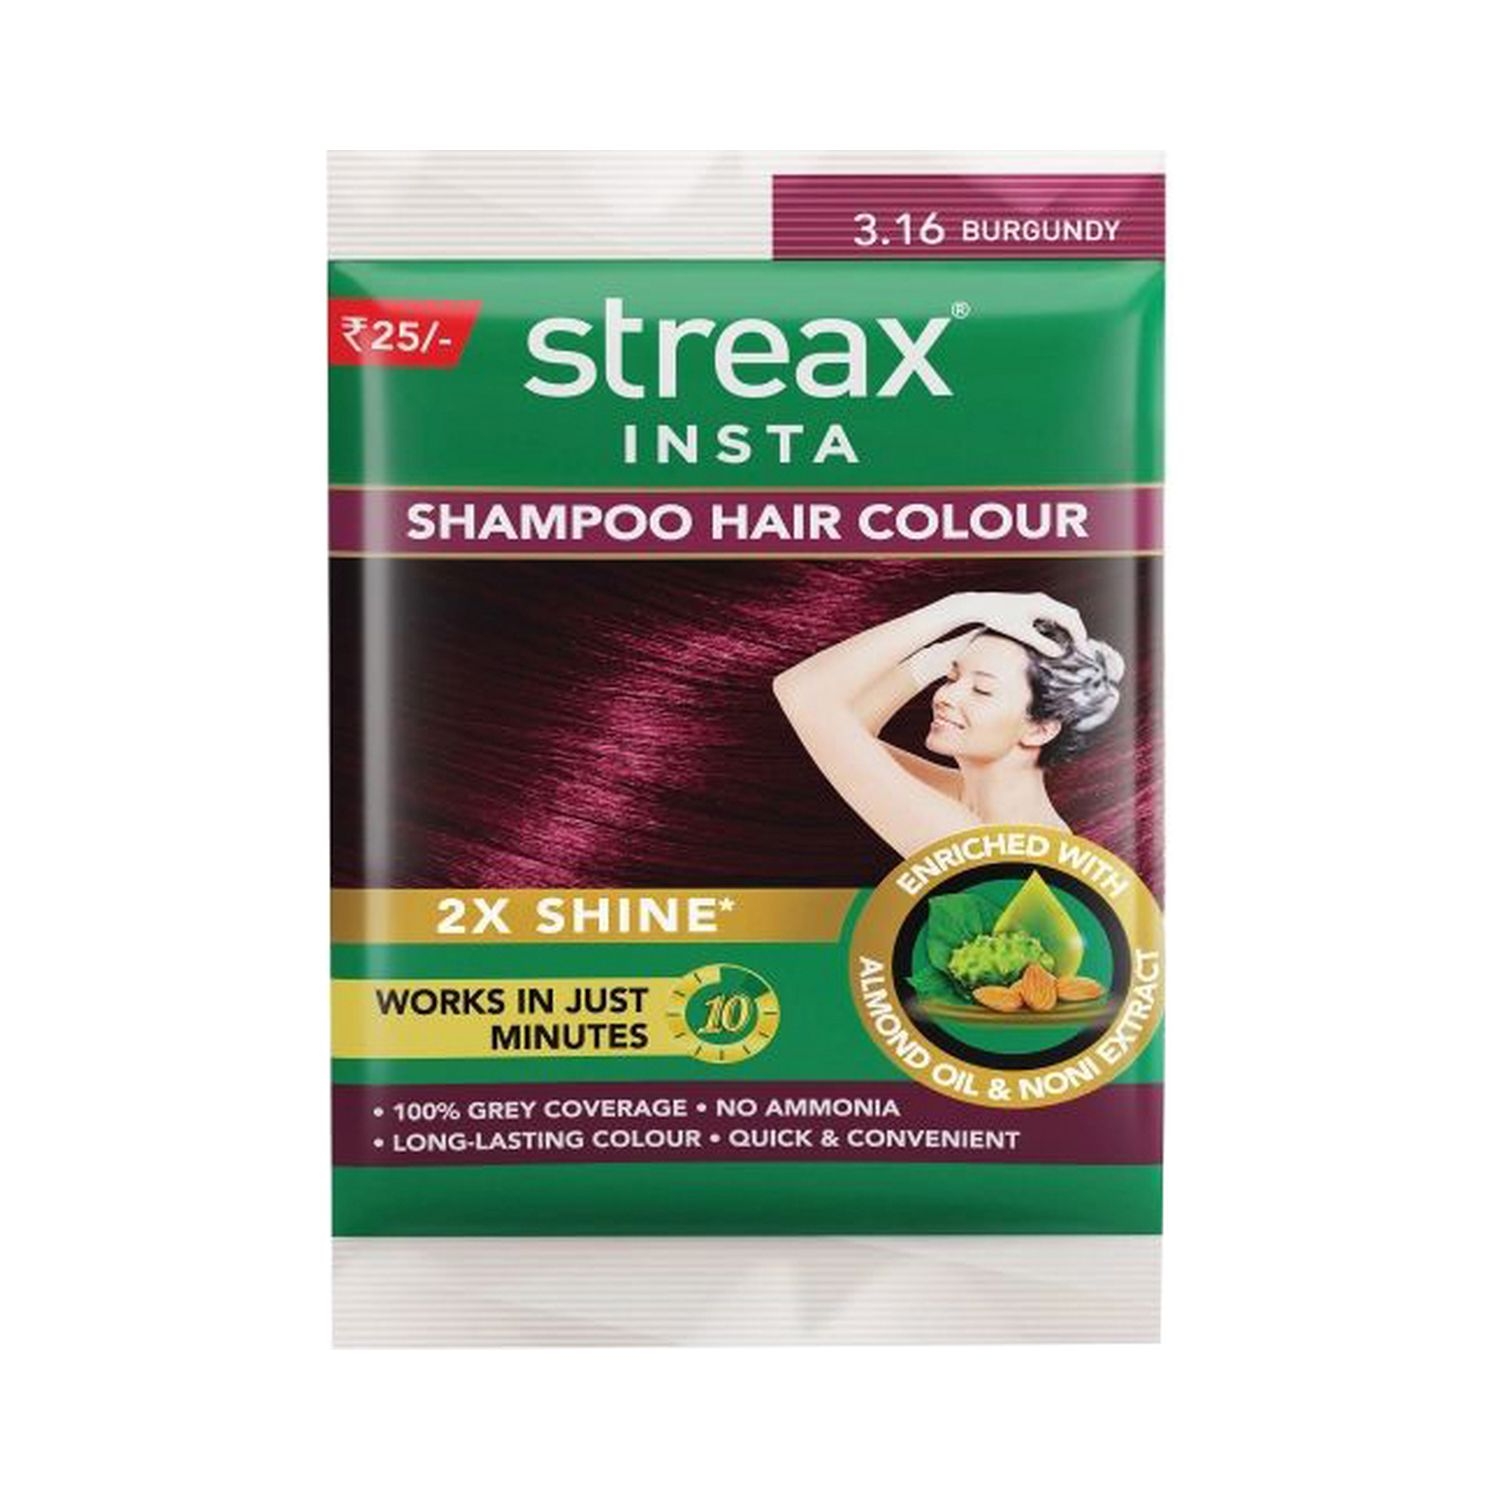 Streax Insta Shampoo Hair Colour - 3.16 Burgundy (18ml)